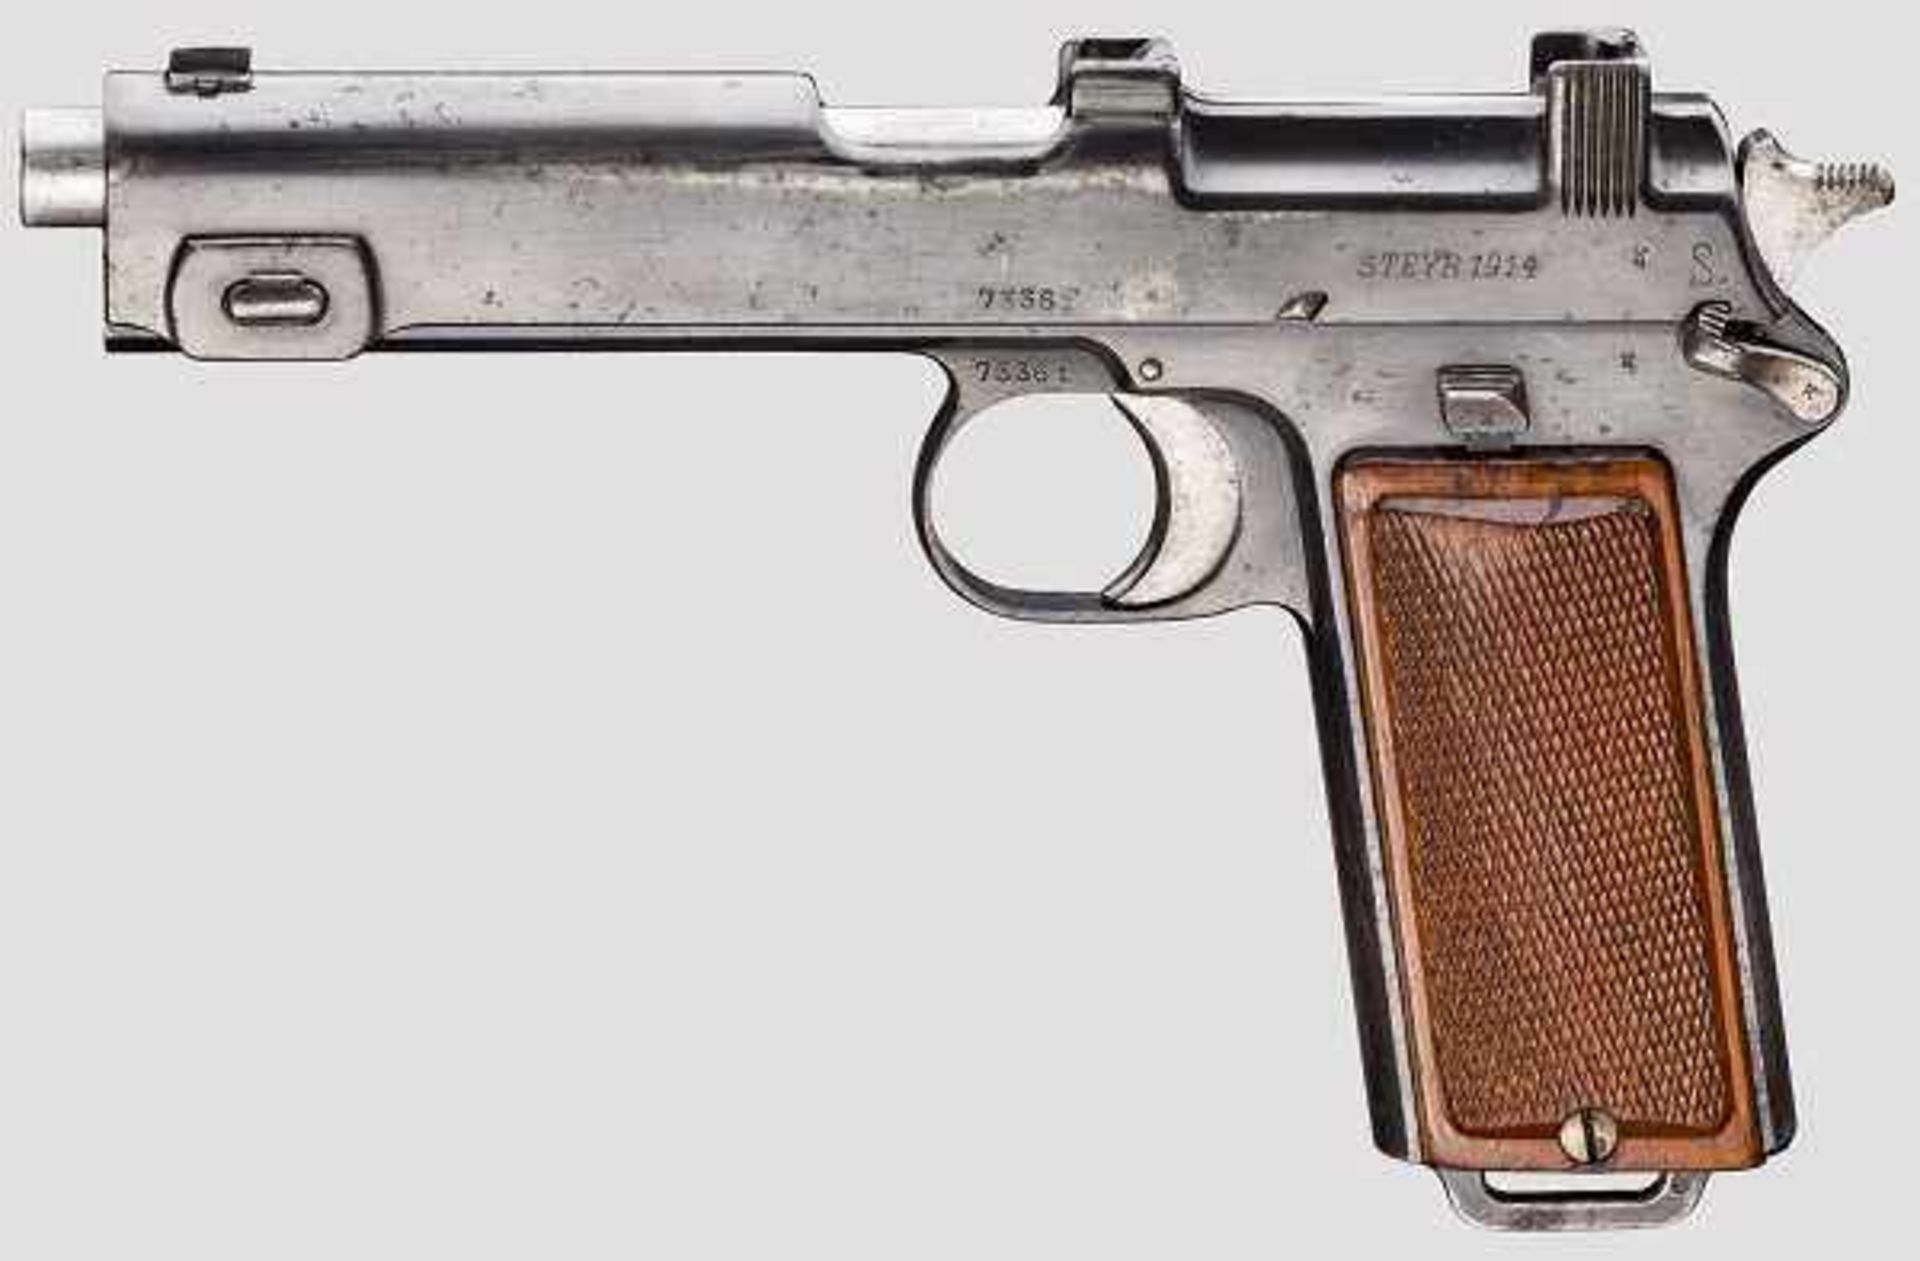 Steyr Mod. 1912 Kal. 9 mm Steyr, Nr. 7336f. Nummerngleich. Fast blanker Lauf. Achtschüssig. Dt.